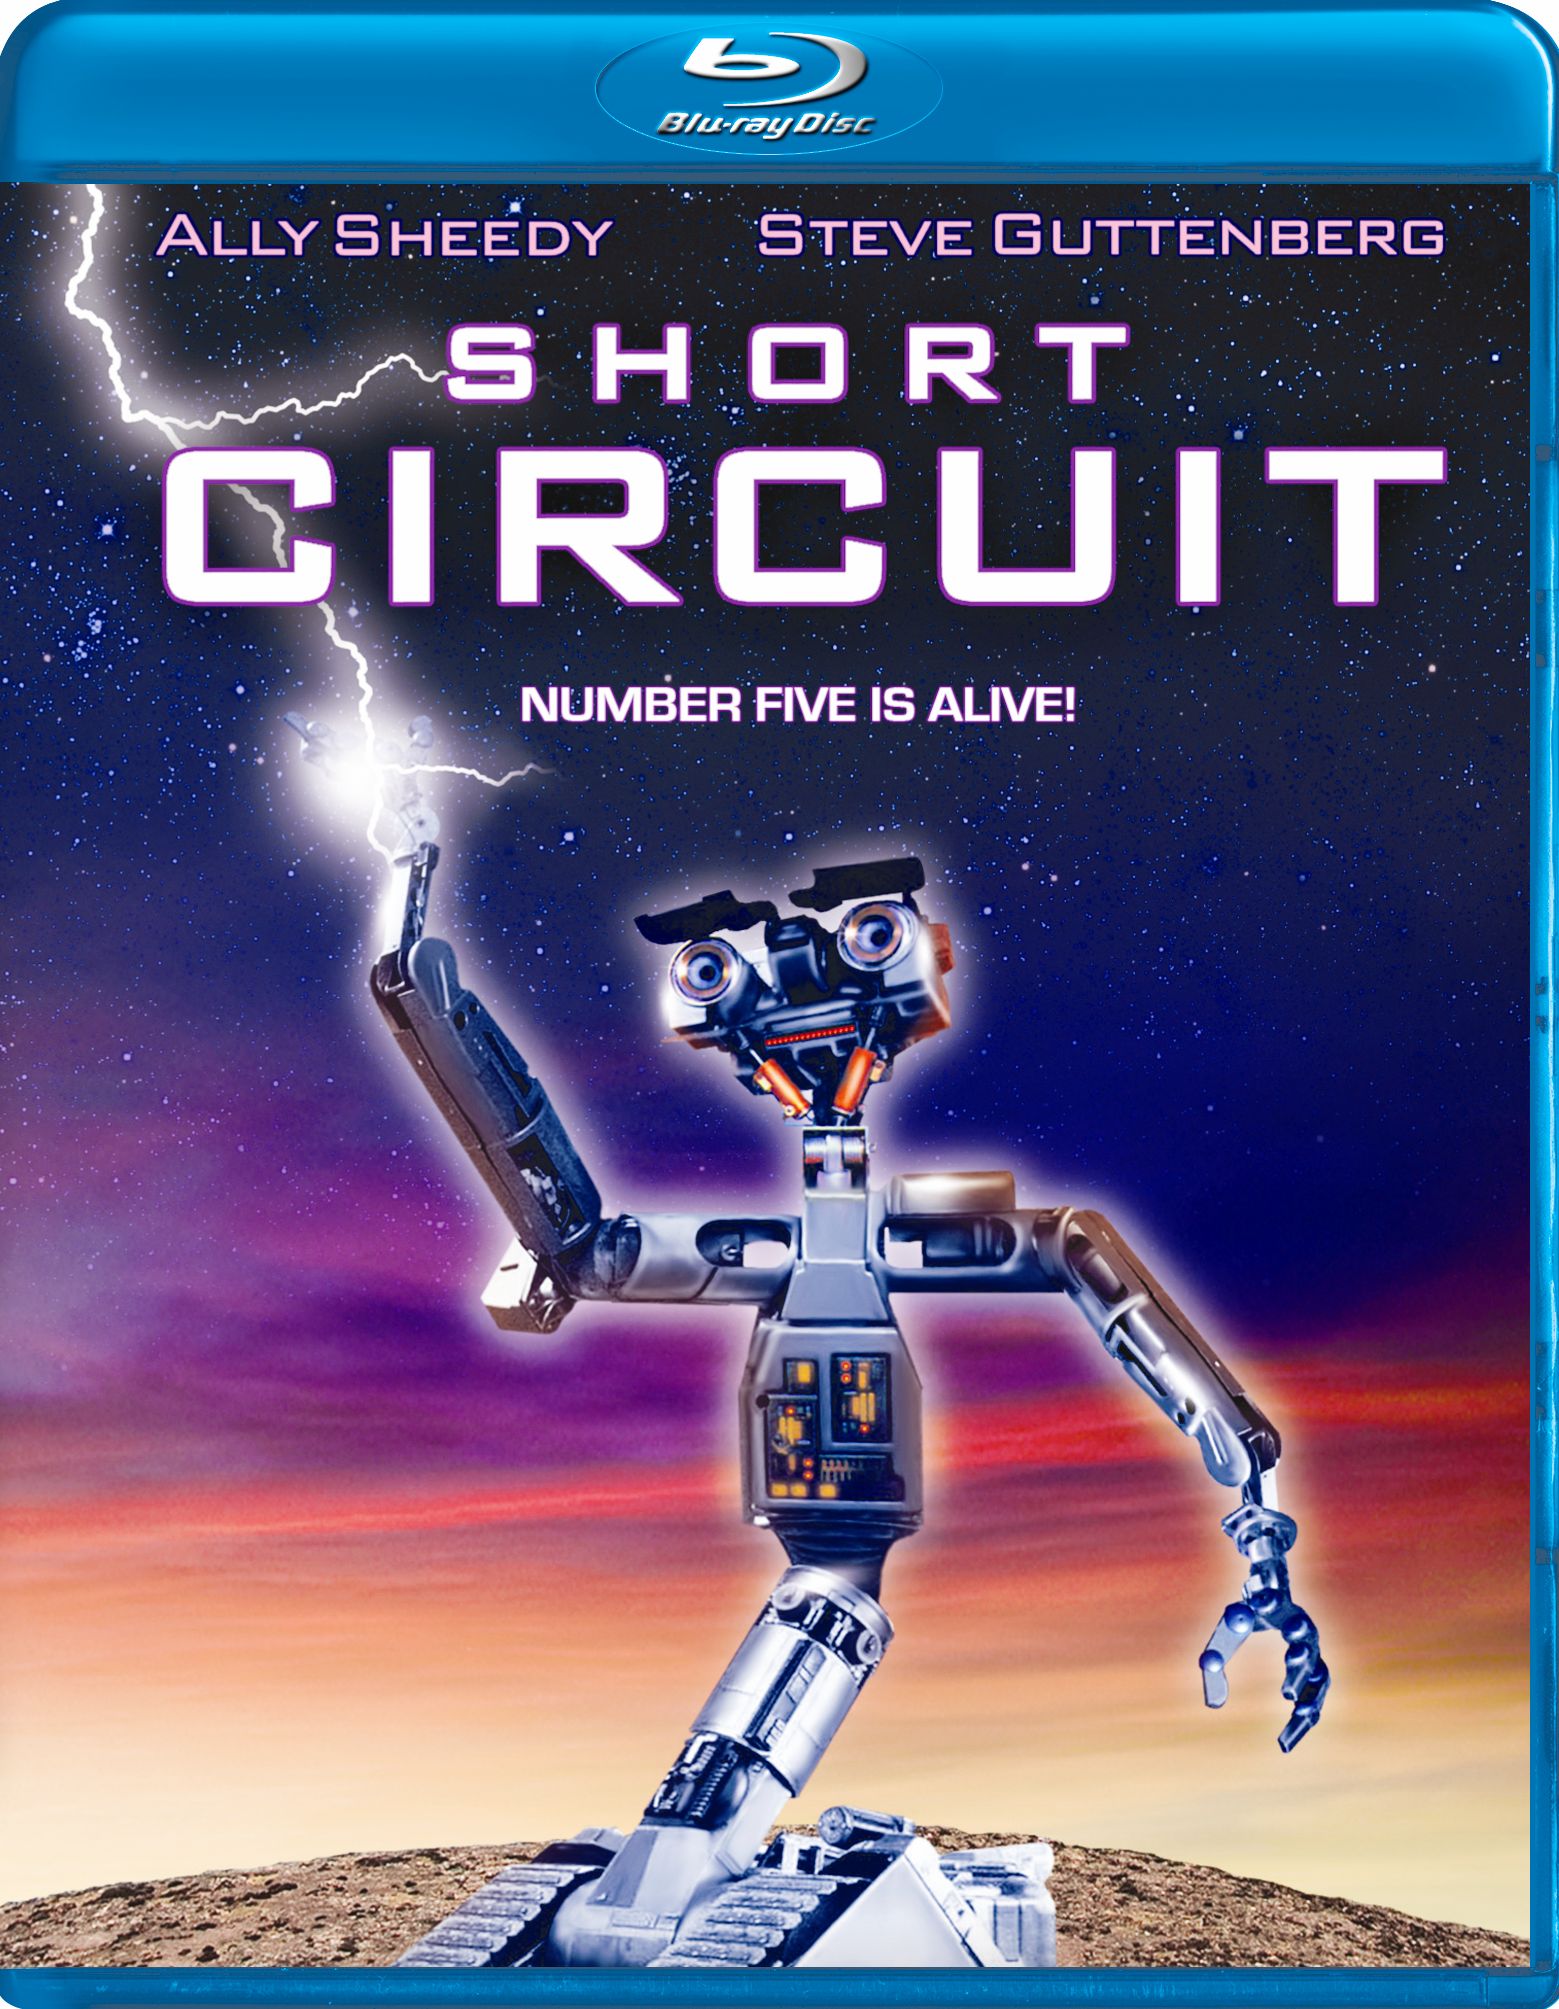 short circuit movie